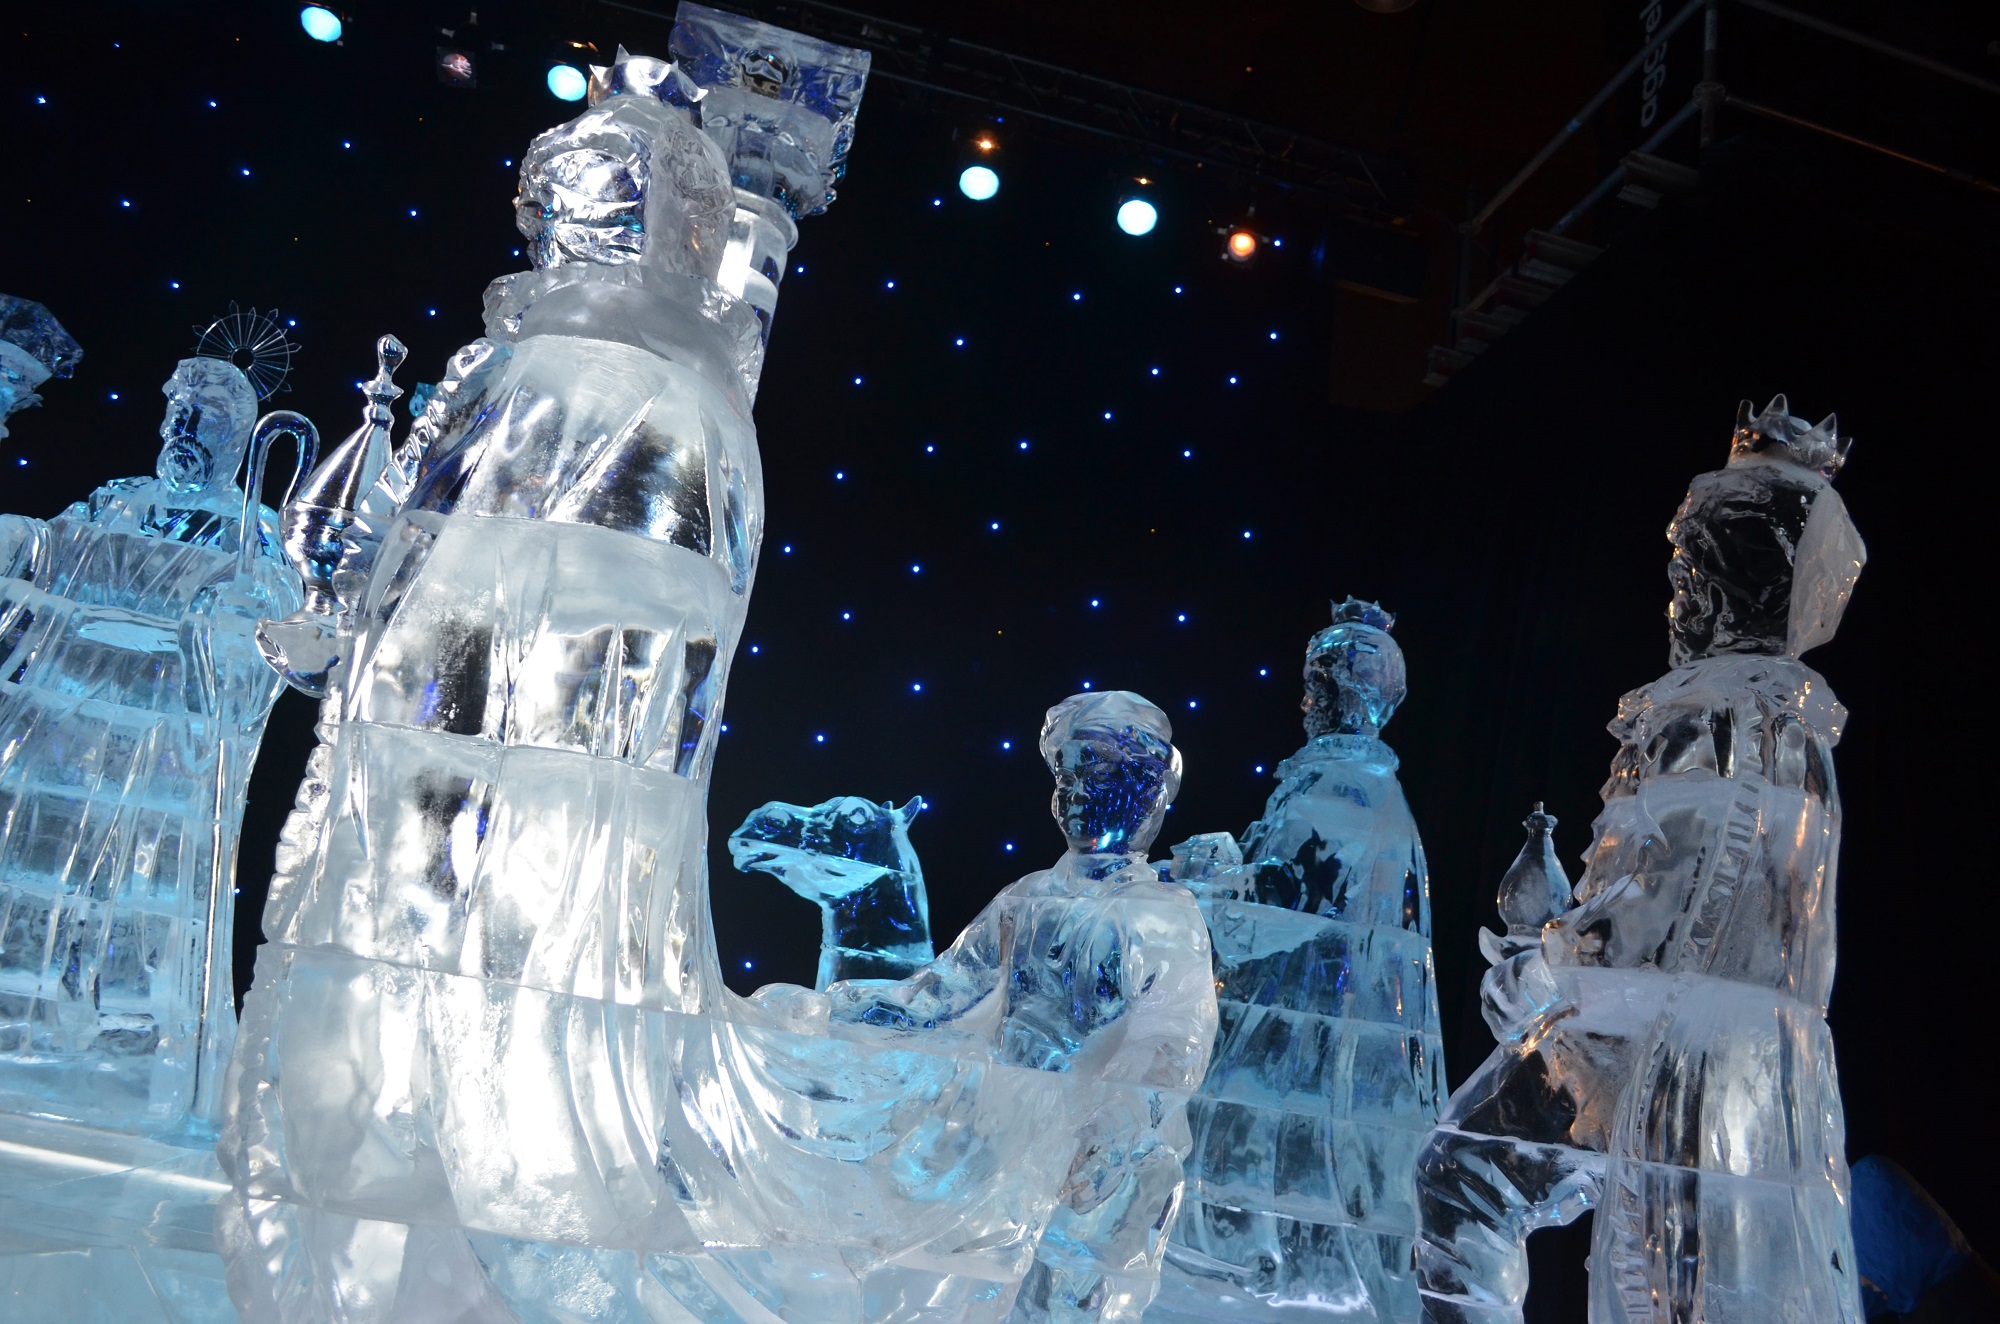 Indoor decorative ice sculptures